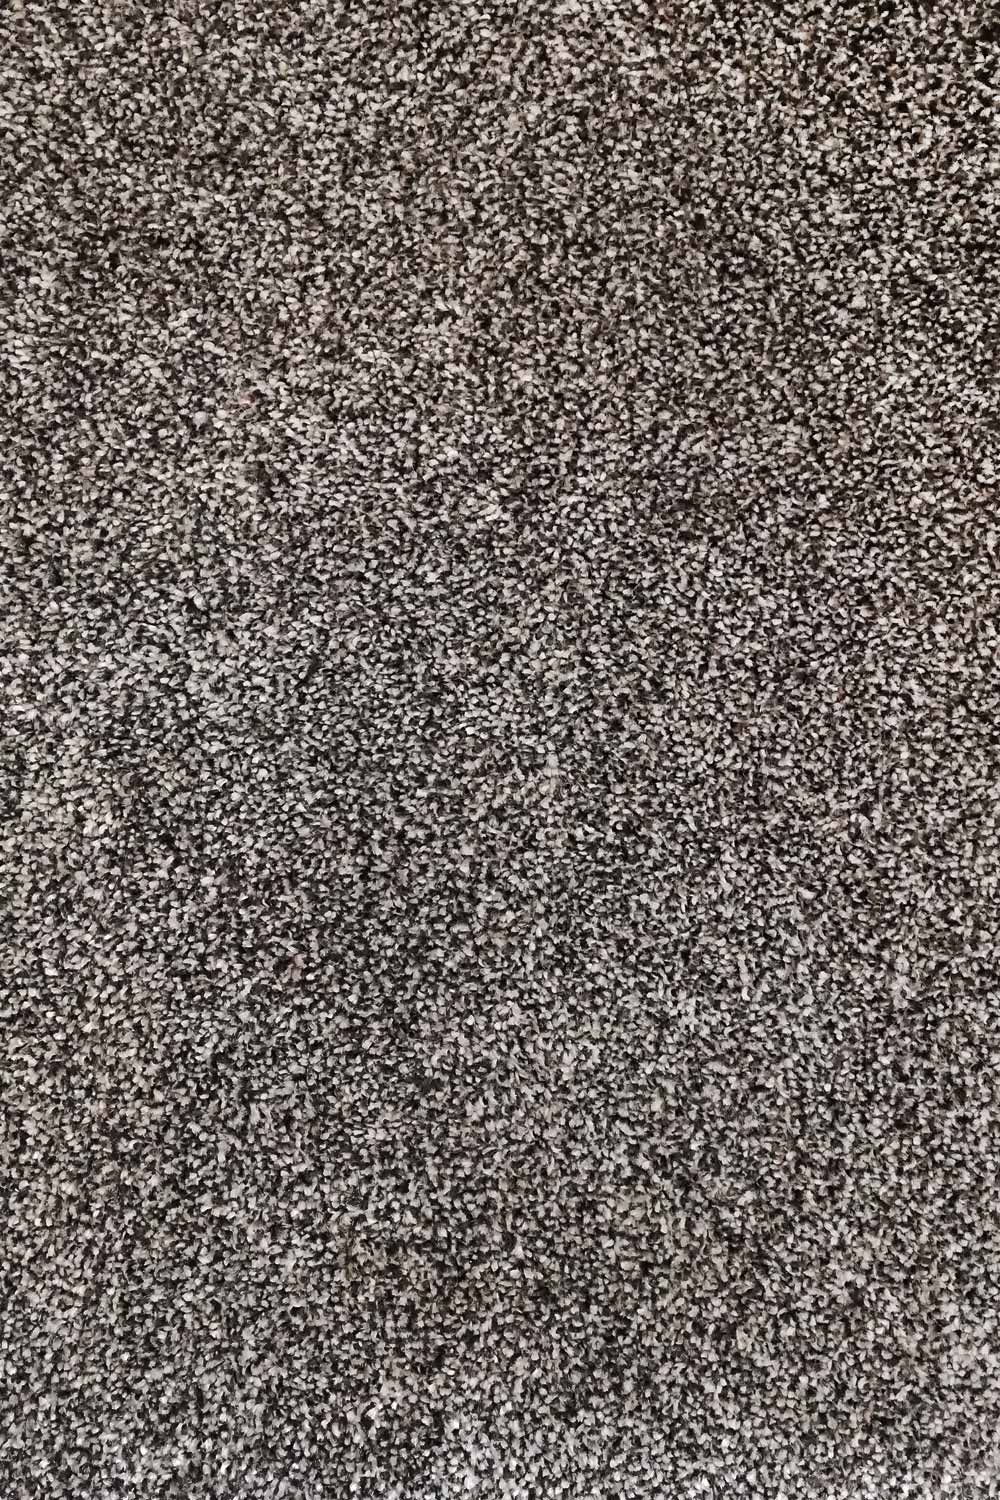 Metrážny koberec Dalesman 71 500 cm